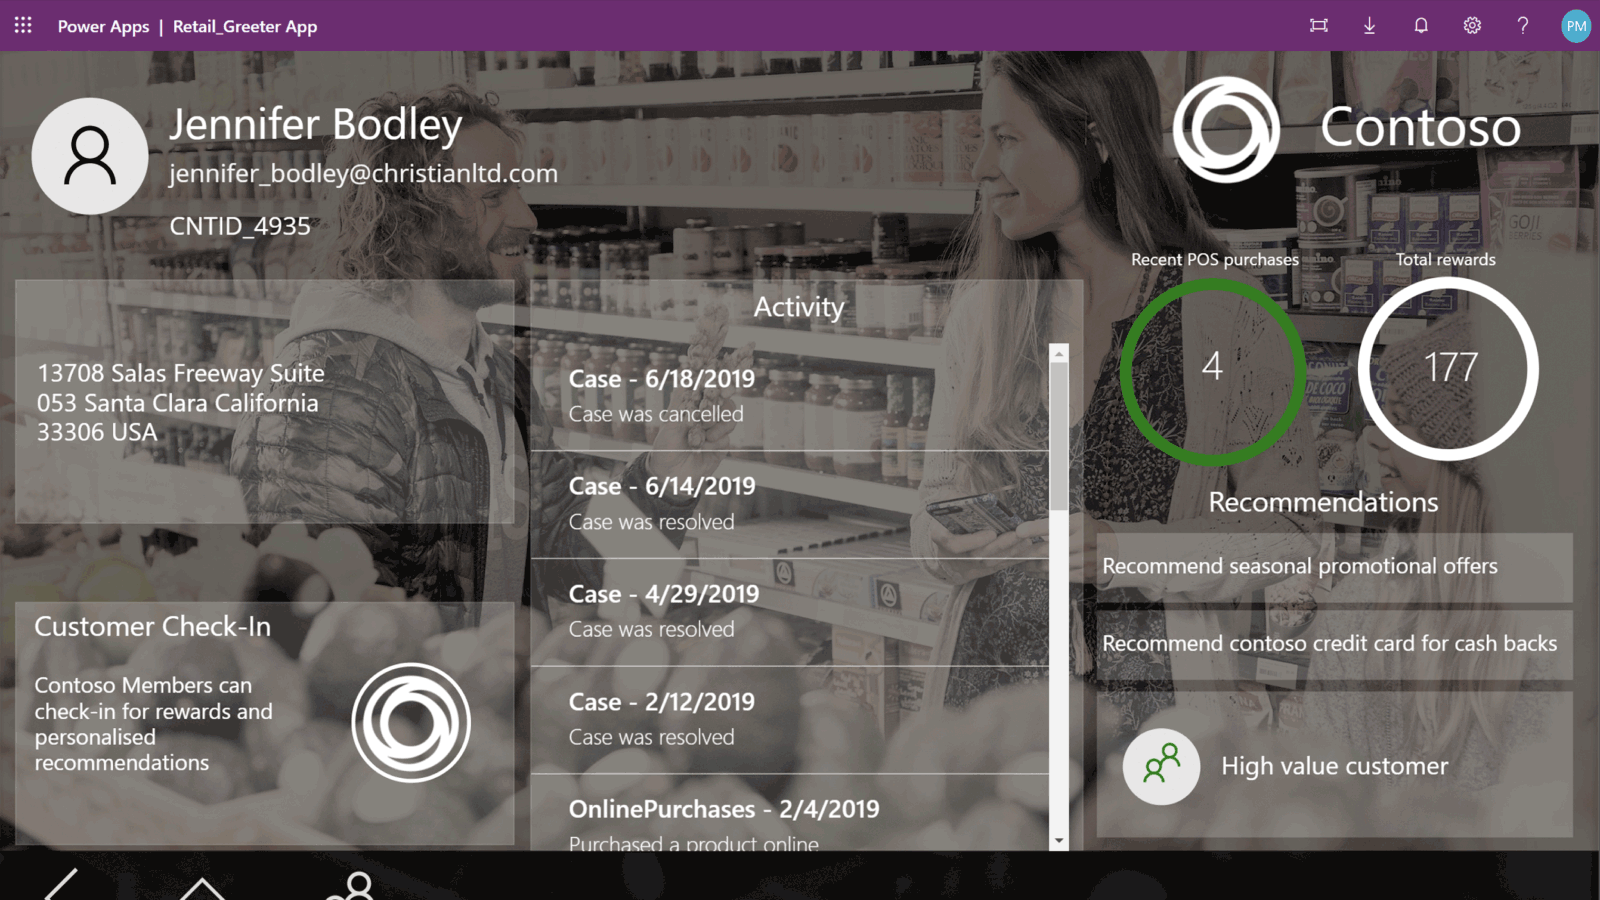 影像顯示 power apps retail greeter 應用程式檢視